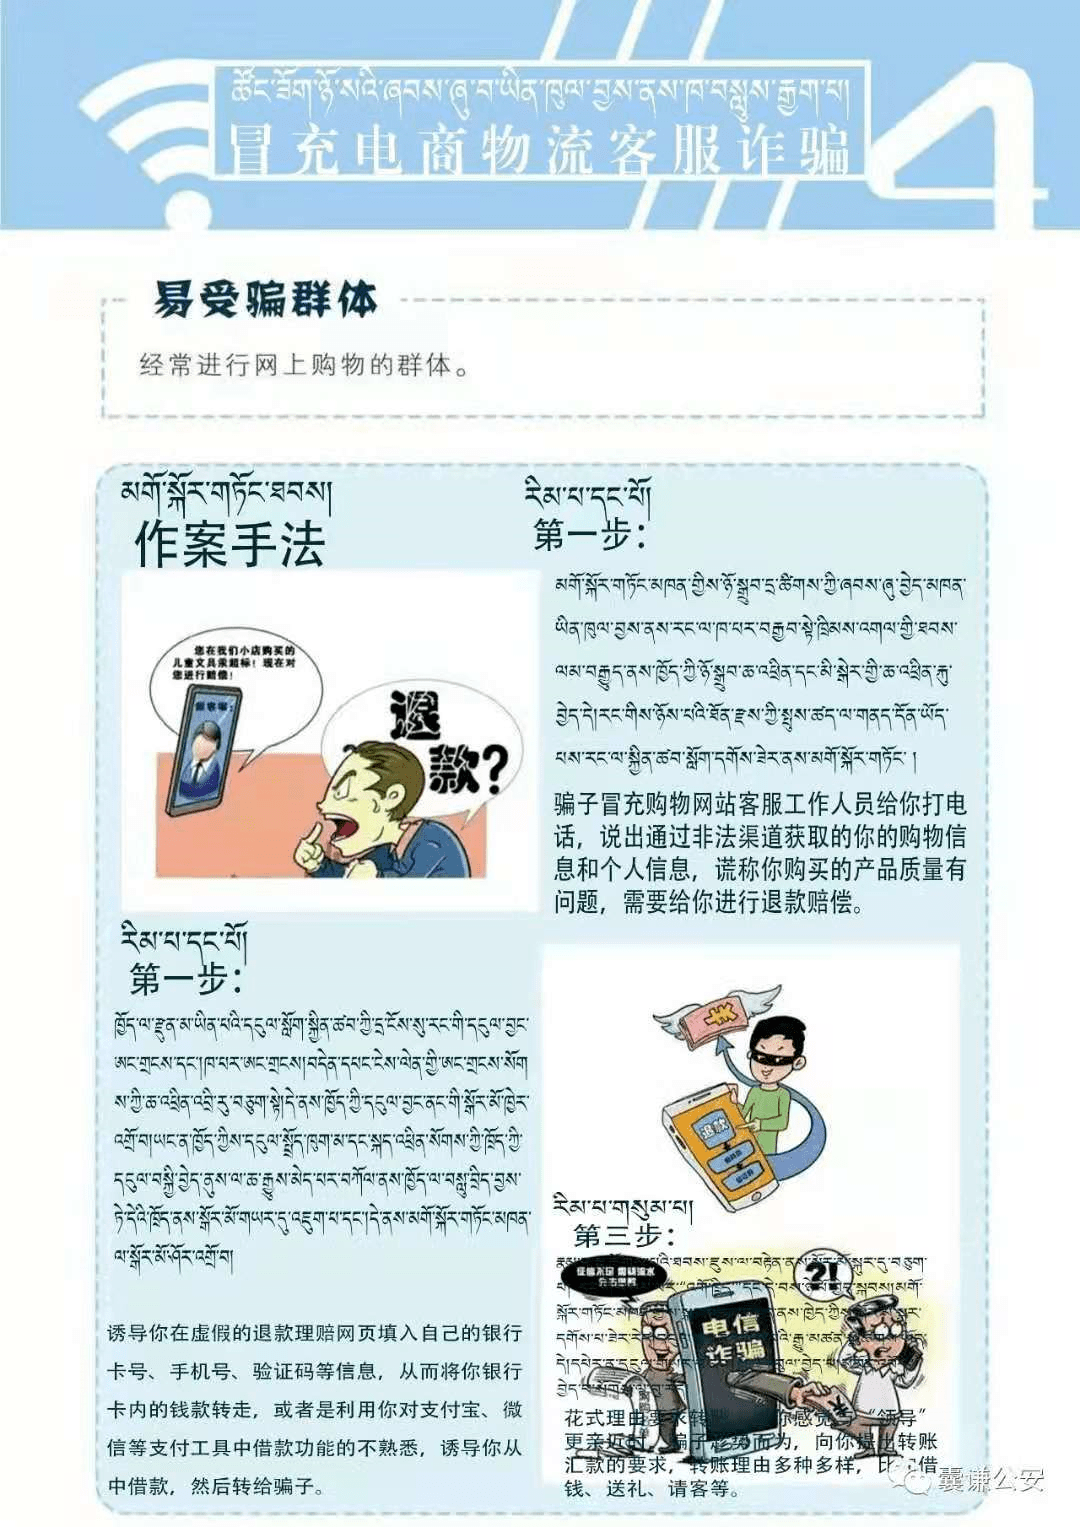 藏汉双语防范电信网络诈骗宣传手册